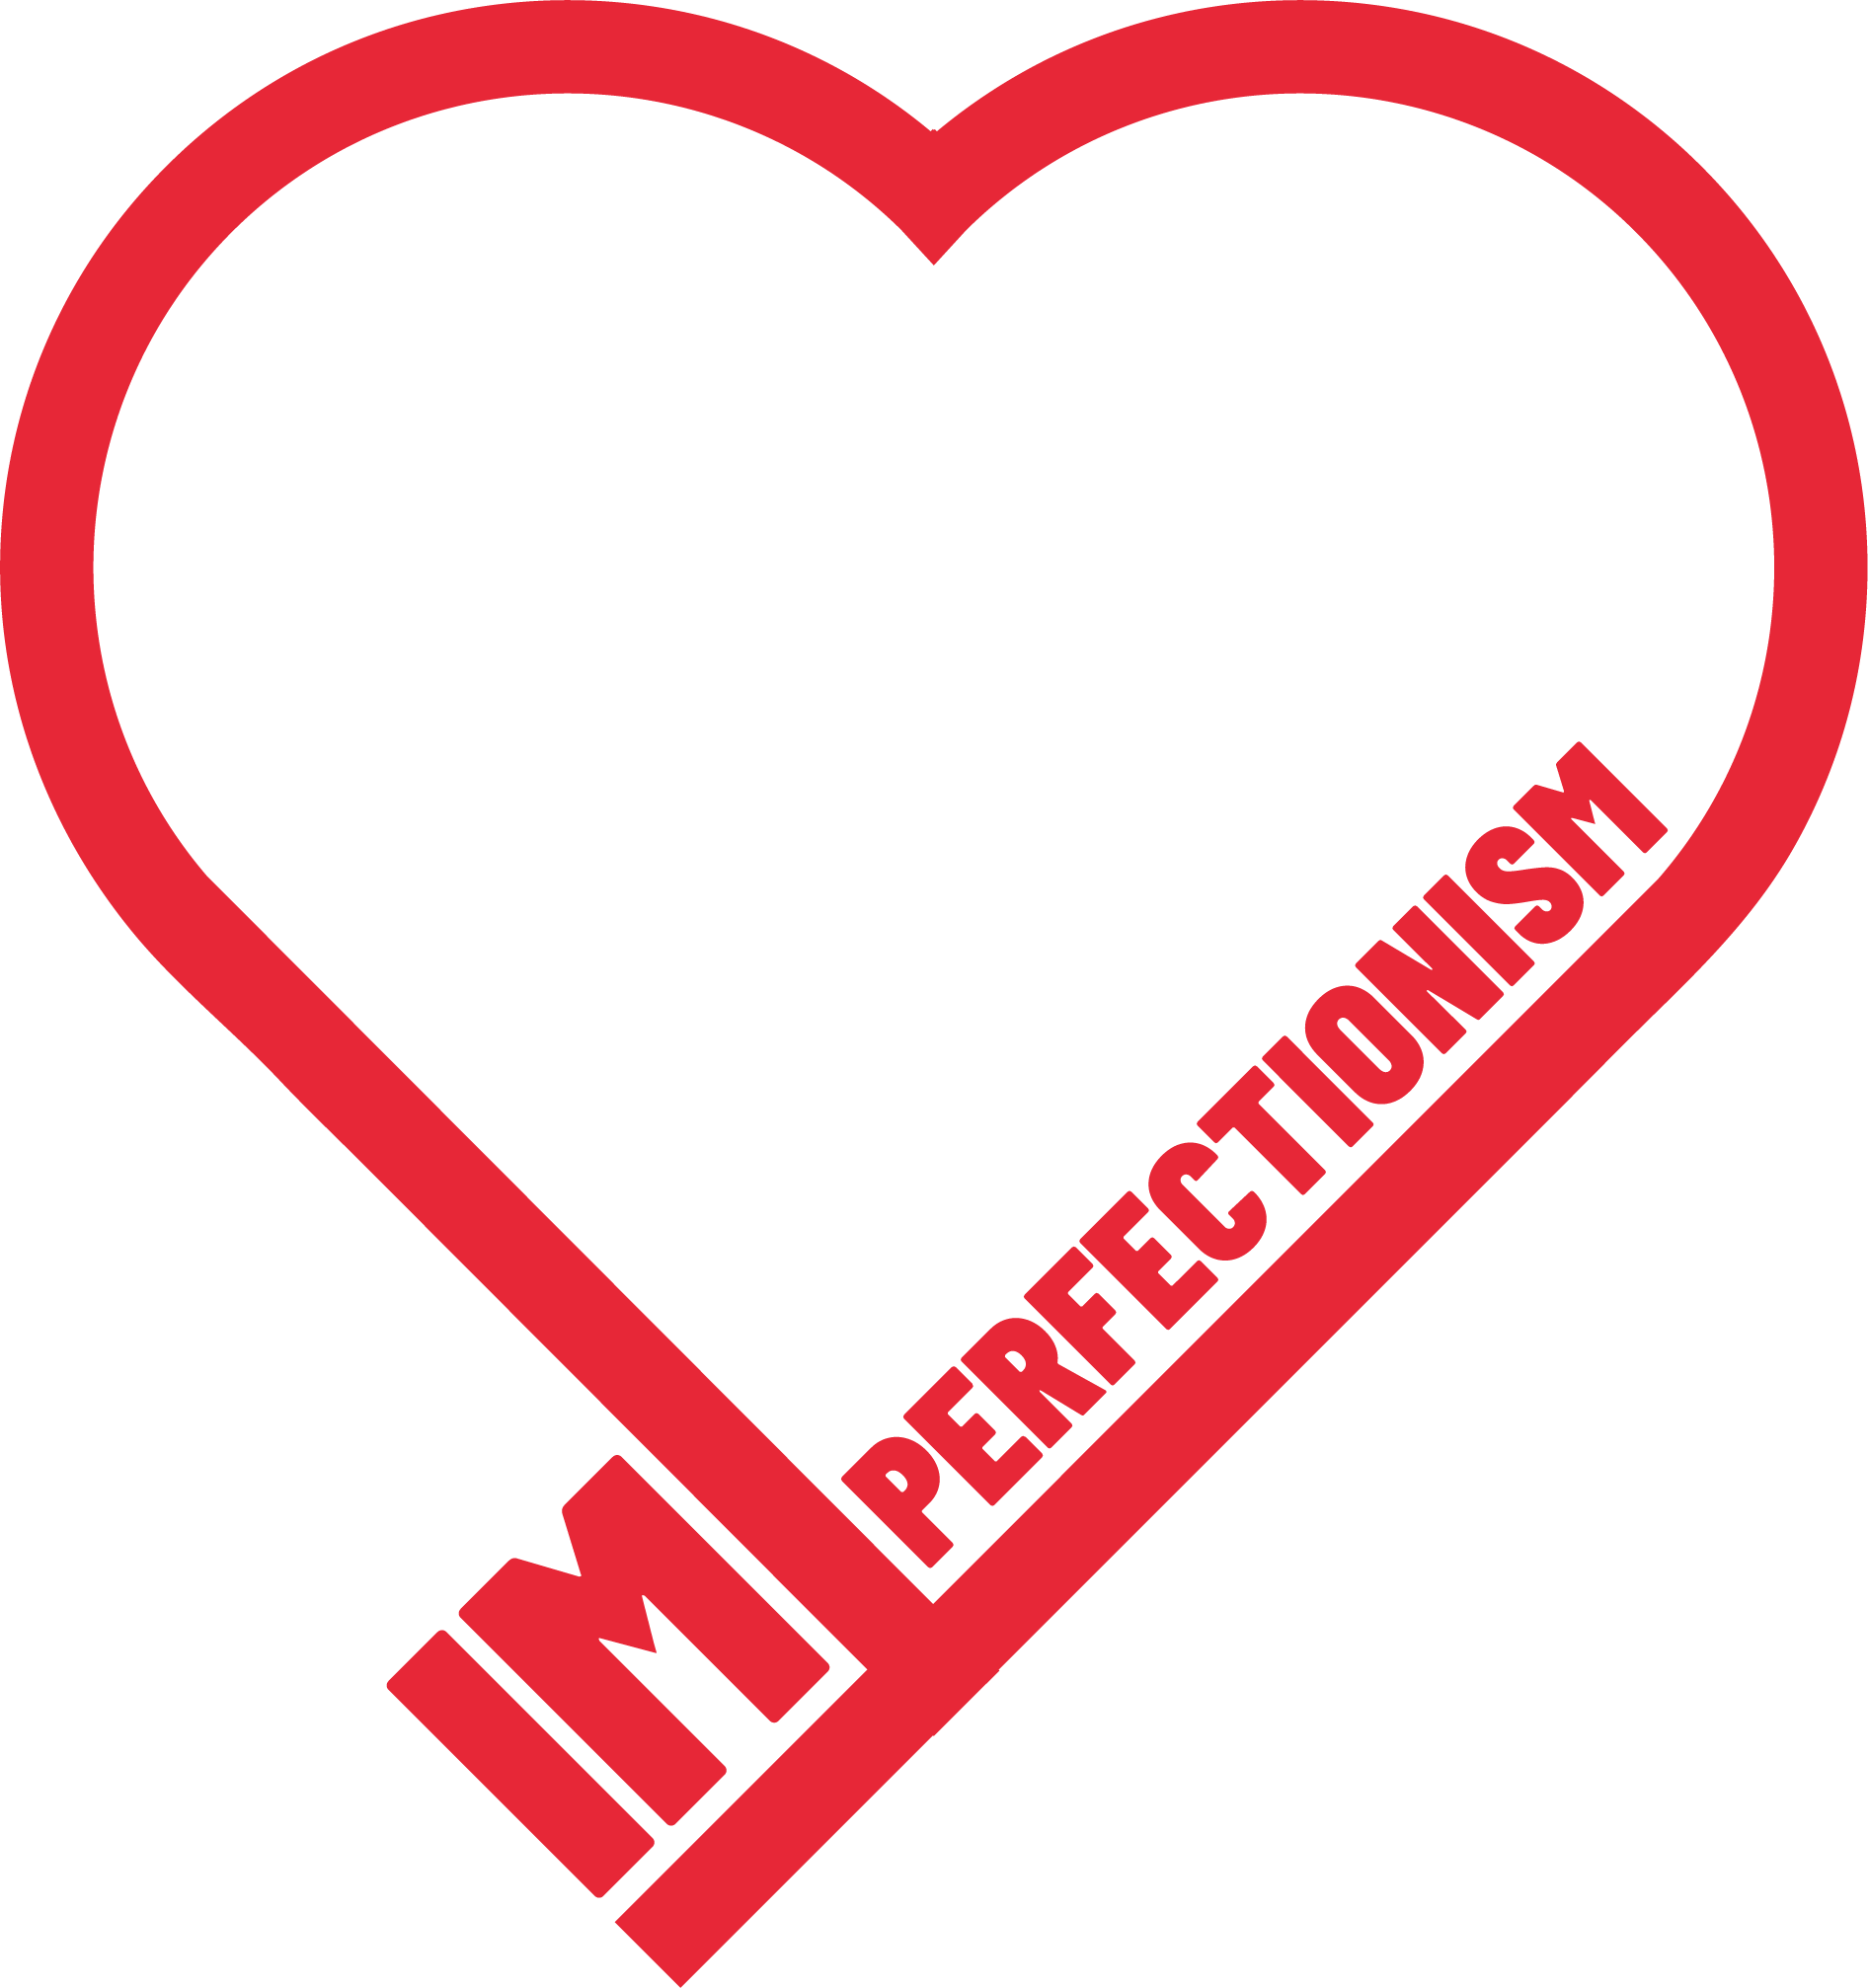 Imperfectionism logo